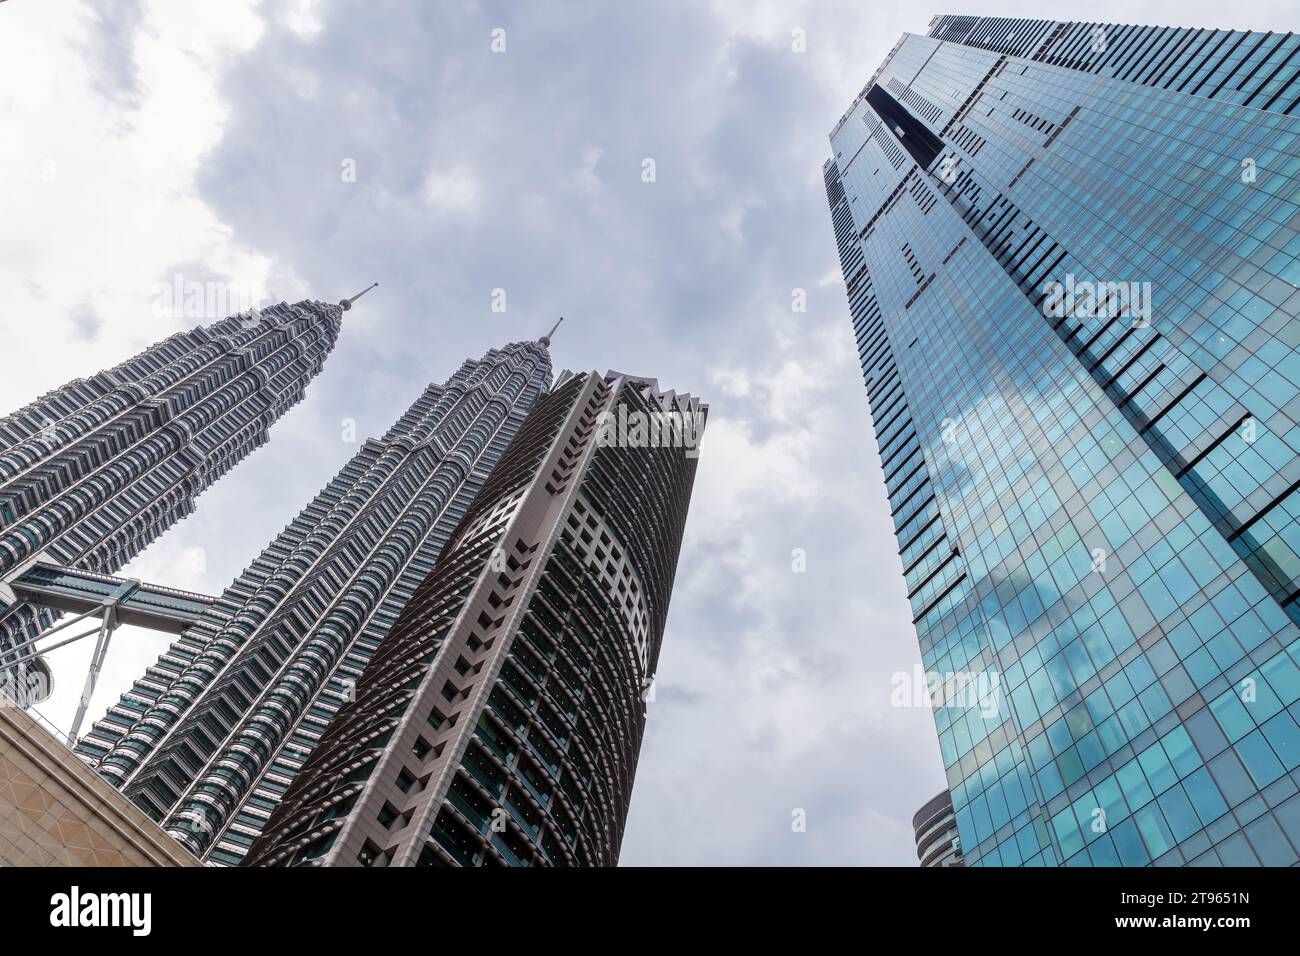 Kuala Lumpur, Malaisie - 25 novembre 2019 : Kuala Lumpur vue de bas en haut avec des gratte-ciel sous un ciel nuageux Banque D'Images